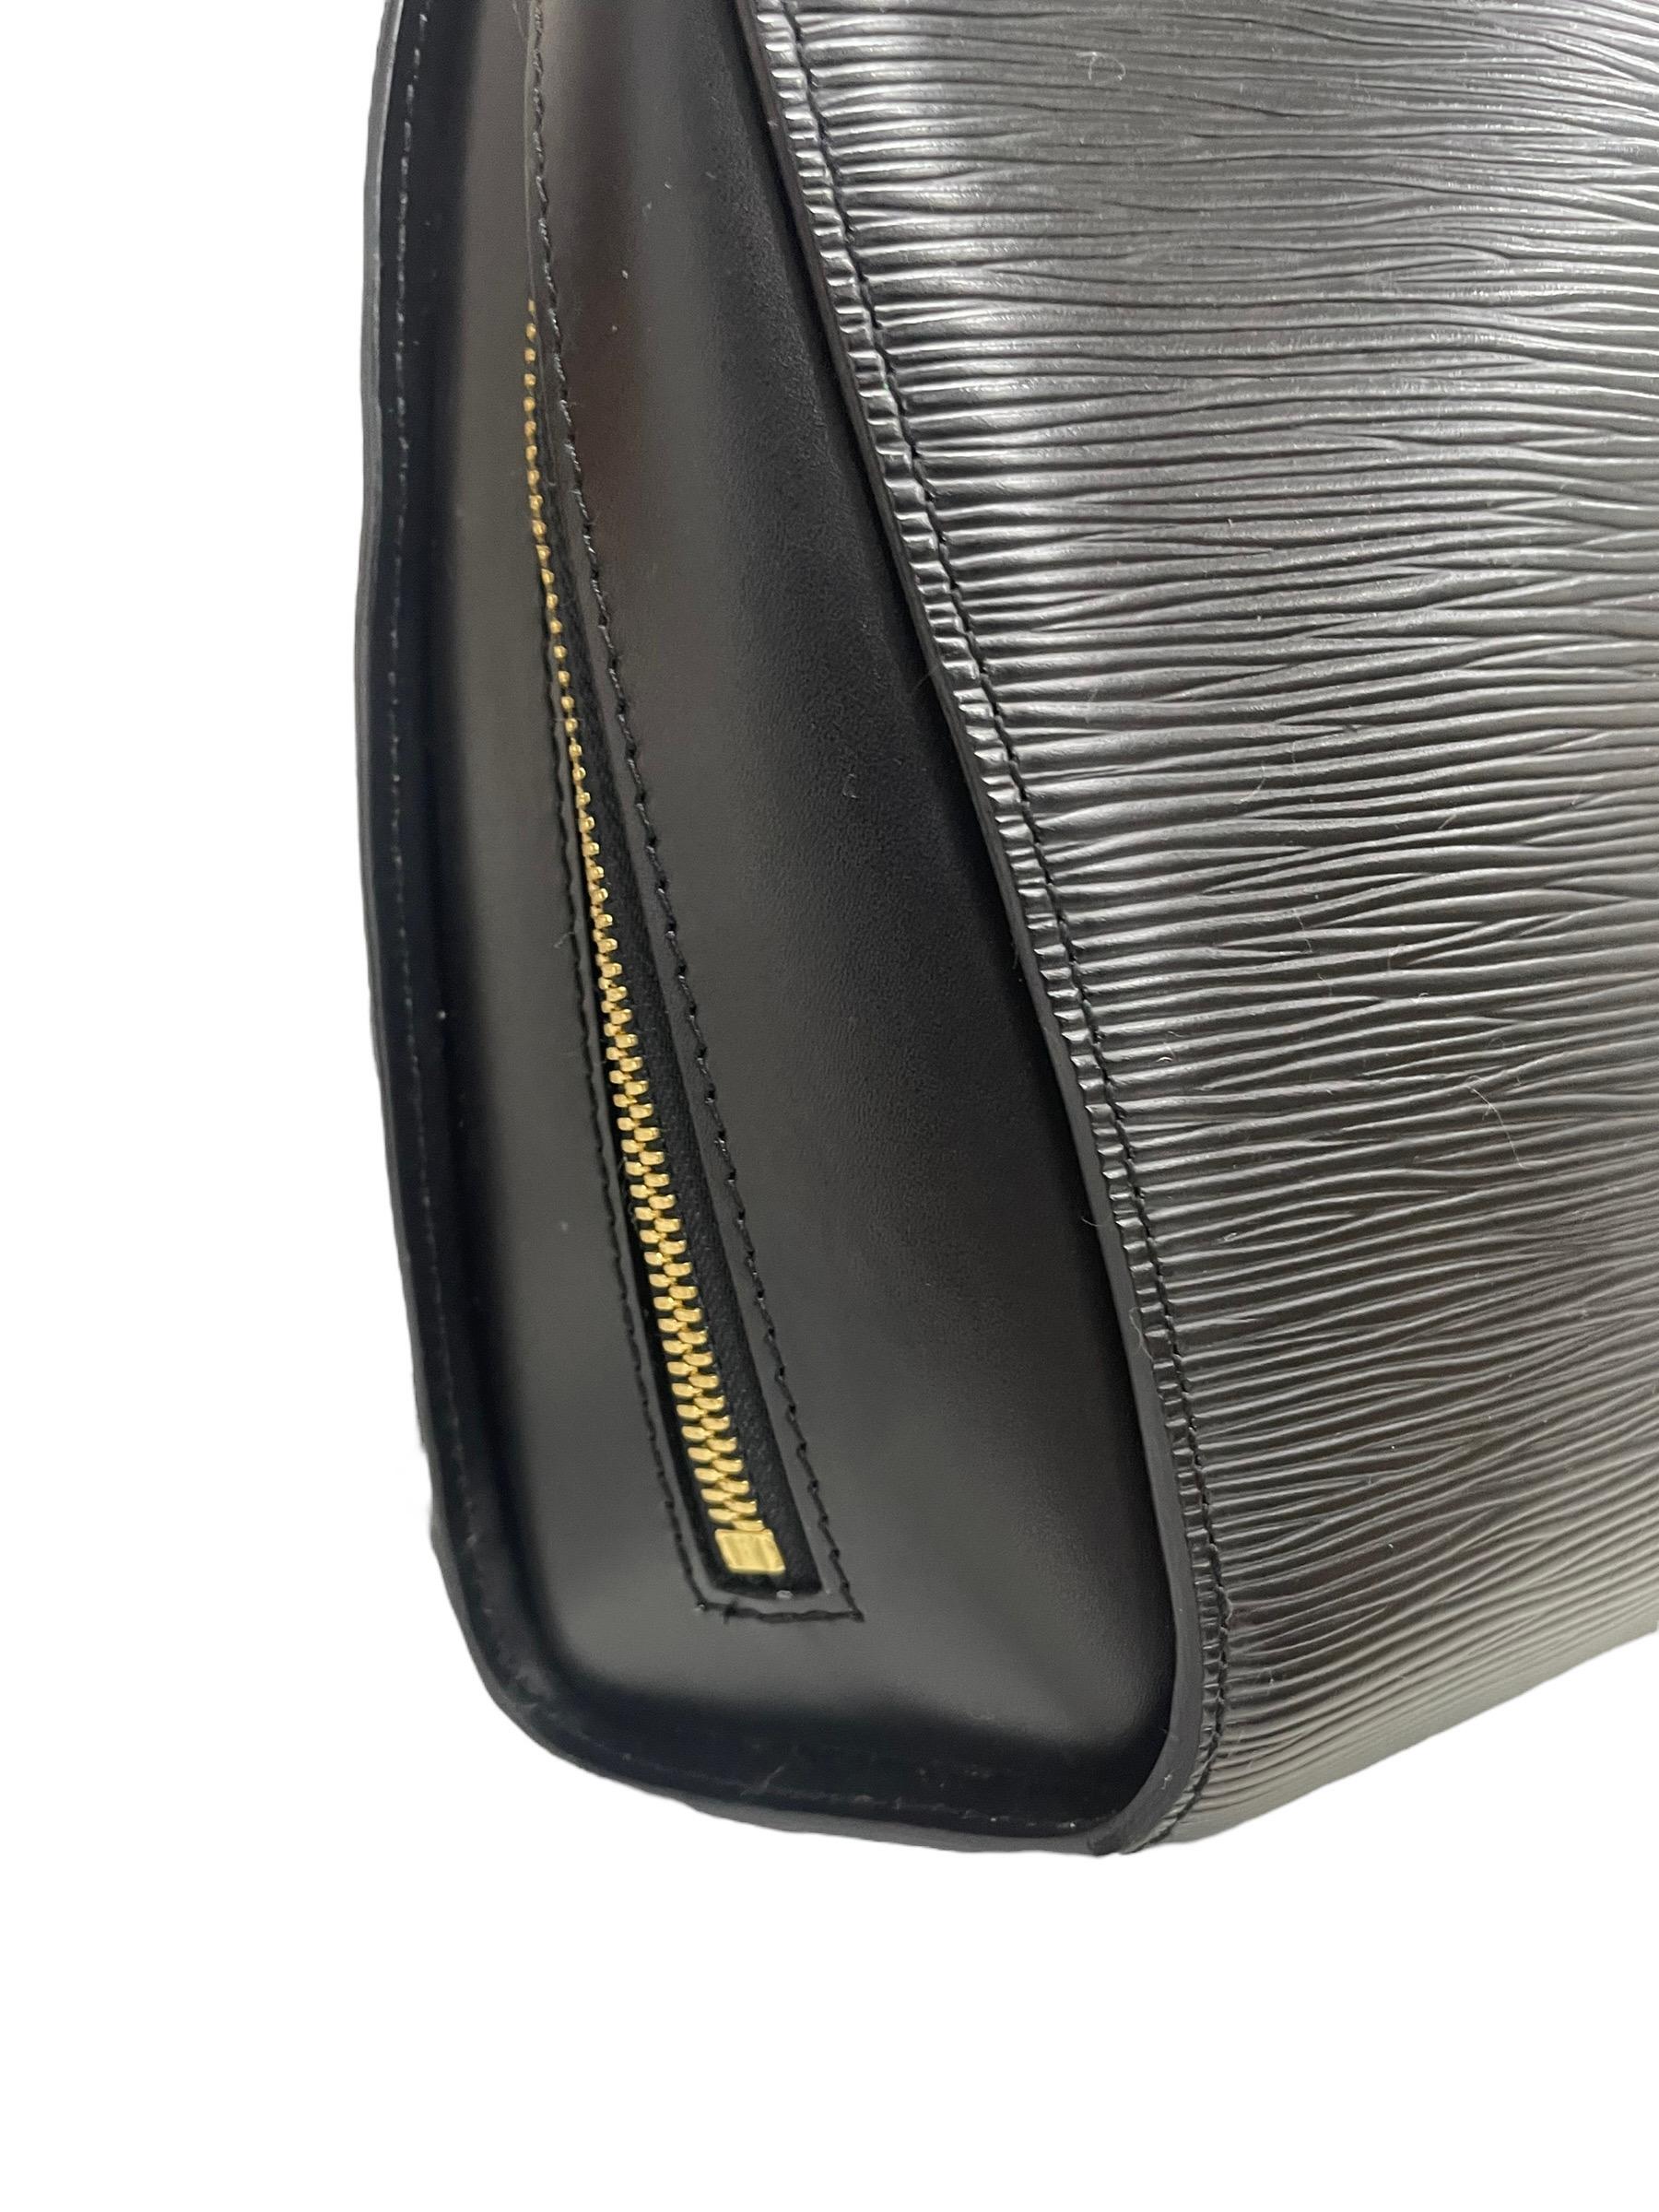 Zaino Firmato Louis Vuitton, modello Mabillon, misura PM, realizzato in pelle epi nera con hardware dorati. Presenta una tasca sul dietro e un'apertura superiore entrambe con zip. Internamente rivestito in alcantara grigio, con tasca senza zip e